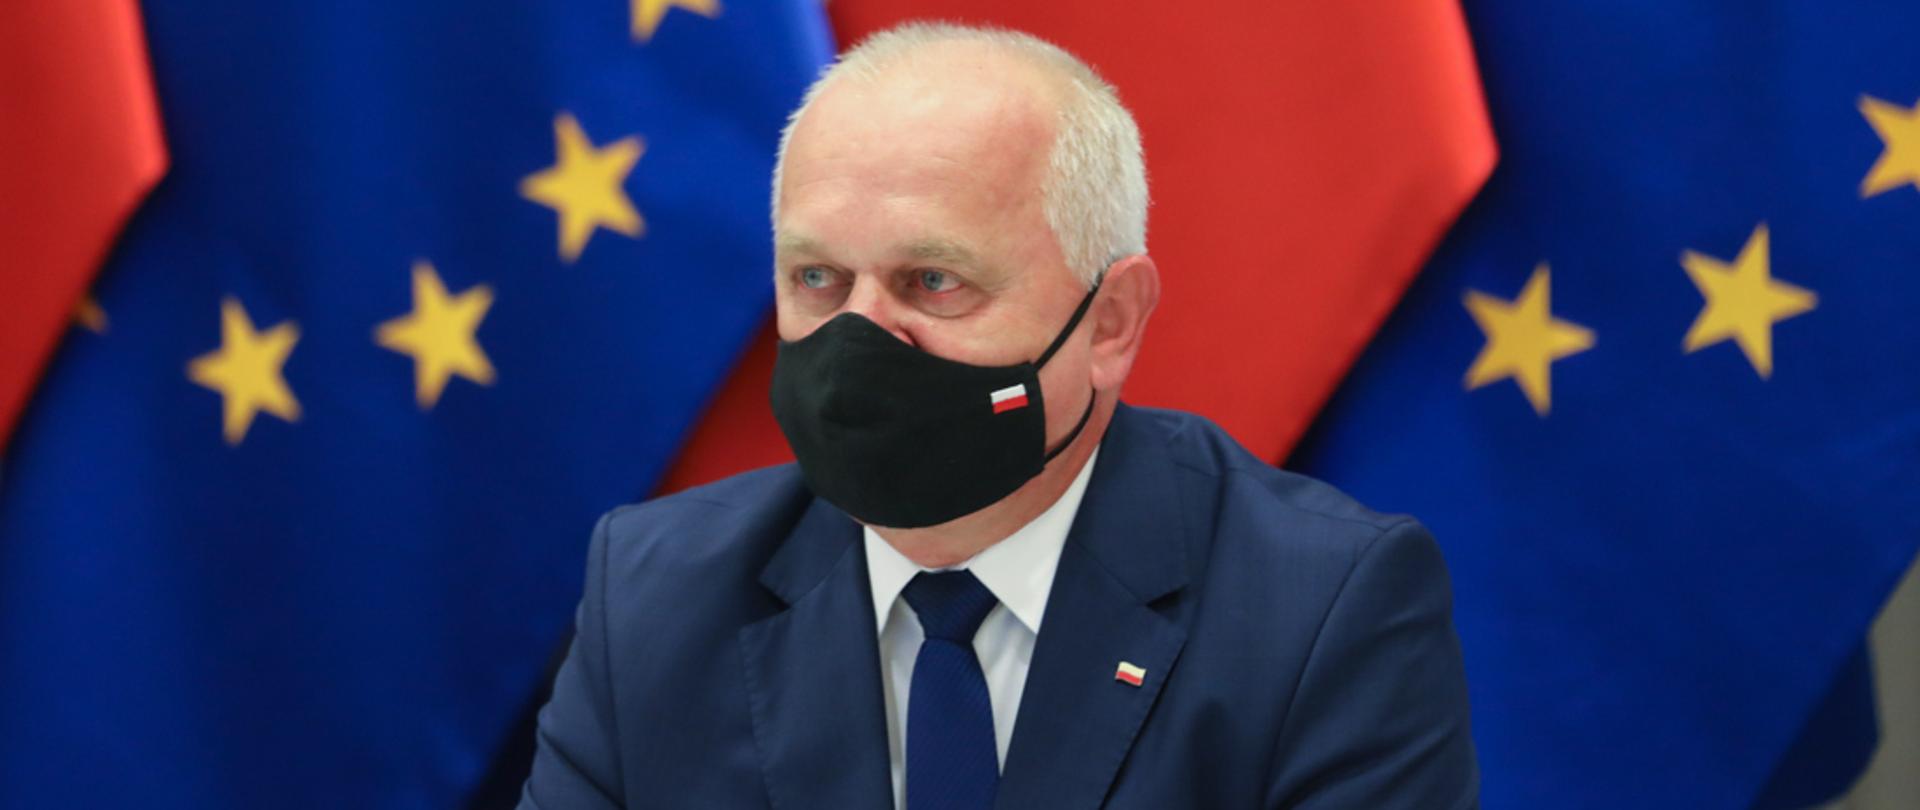 Wojewoda siedzi na tle flagi Polski oraz Unii Europejskiej. Na twarzy ma czarą maseczkę z biało-czerwoną flagą